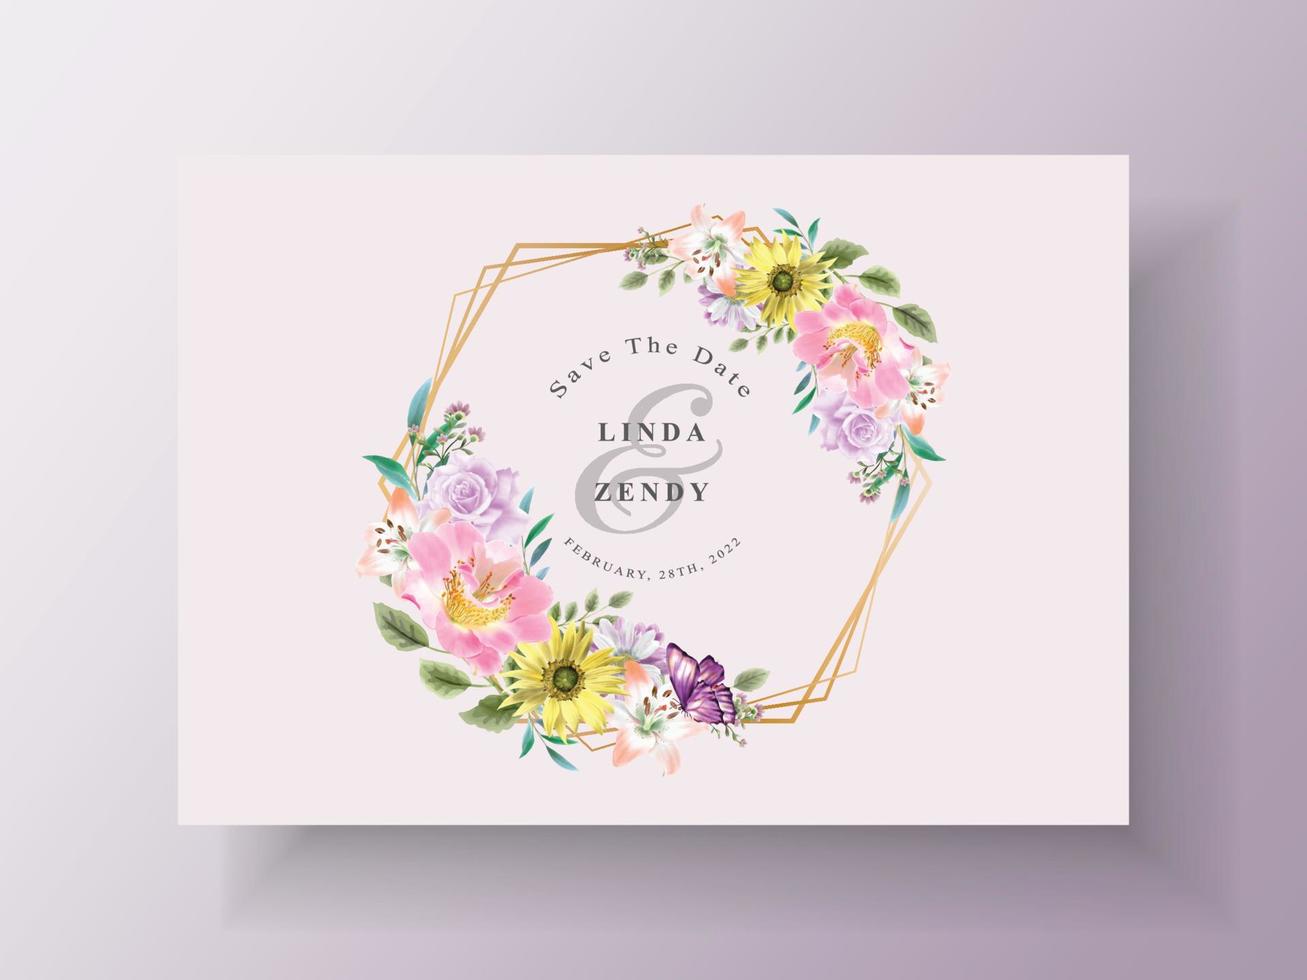 elegante en mooie bloemen bruiloft uitnodigingskaart vector